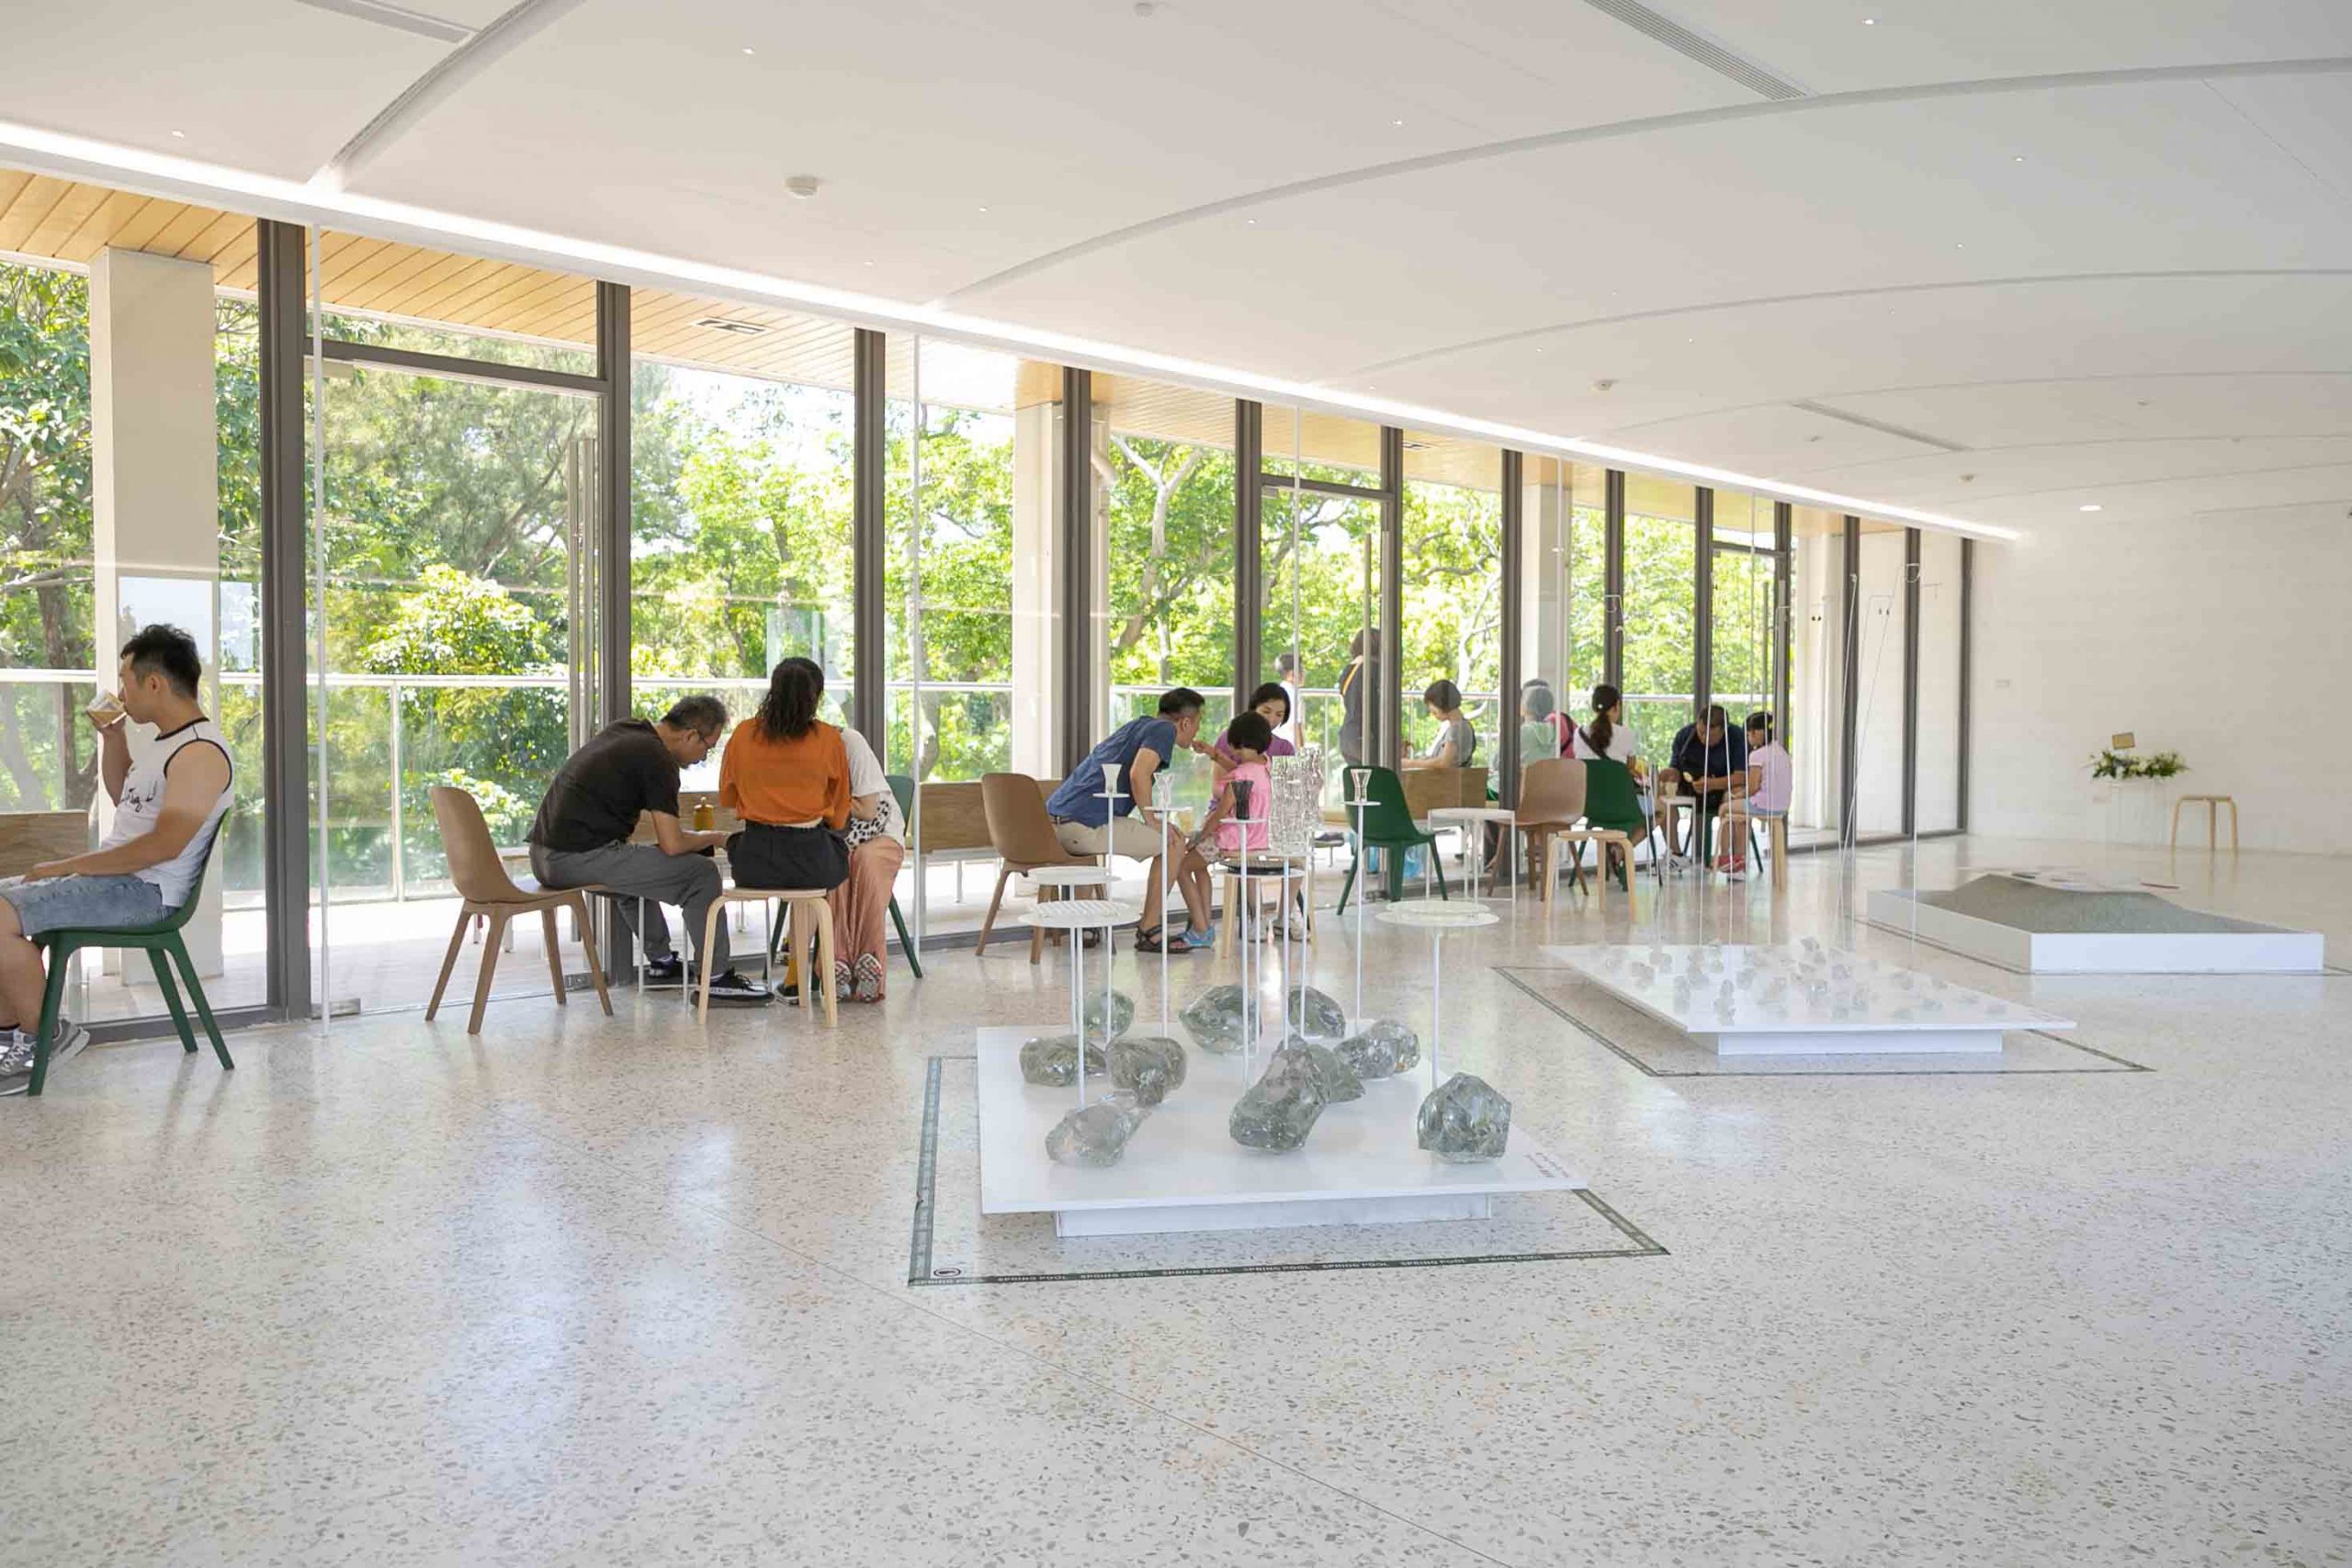 新竹美食-春室Glass Studio + The POOL，動物園旁新竹咖啡廳、玻璃工藝展示空間，捲尾家雪糕氣泡飲。